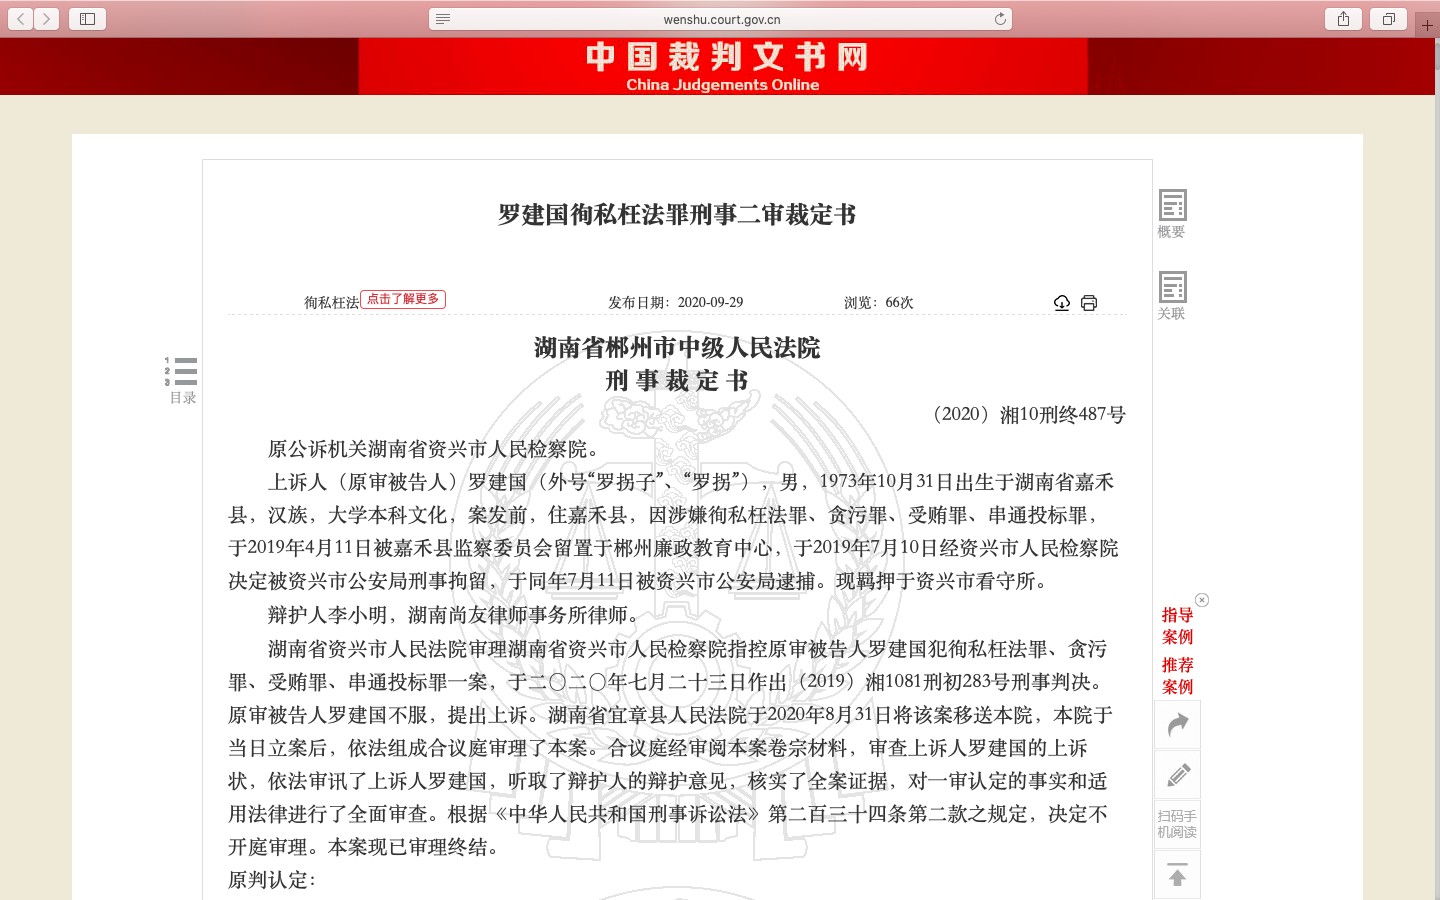 中国裁判文书网公布了罗建国案的二审裁定书